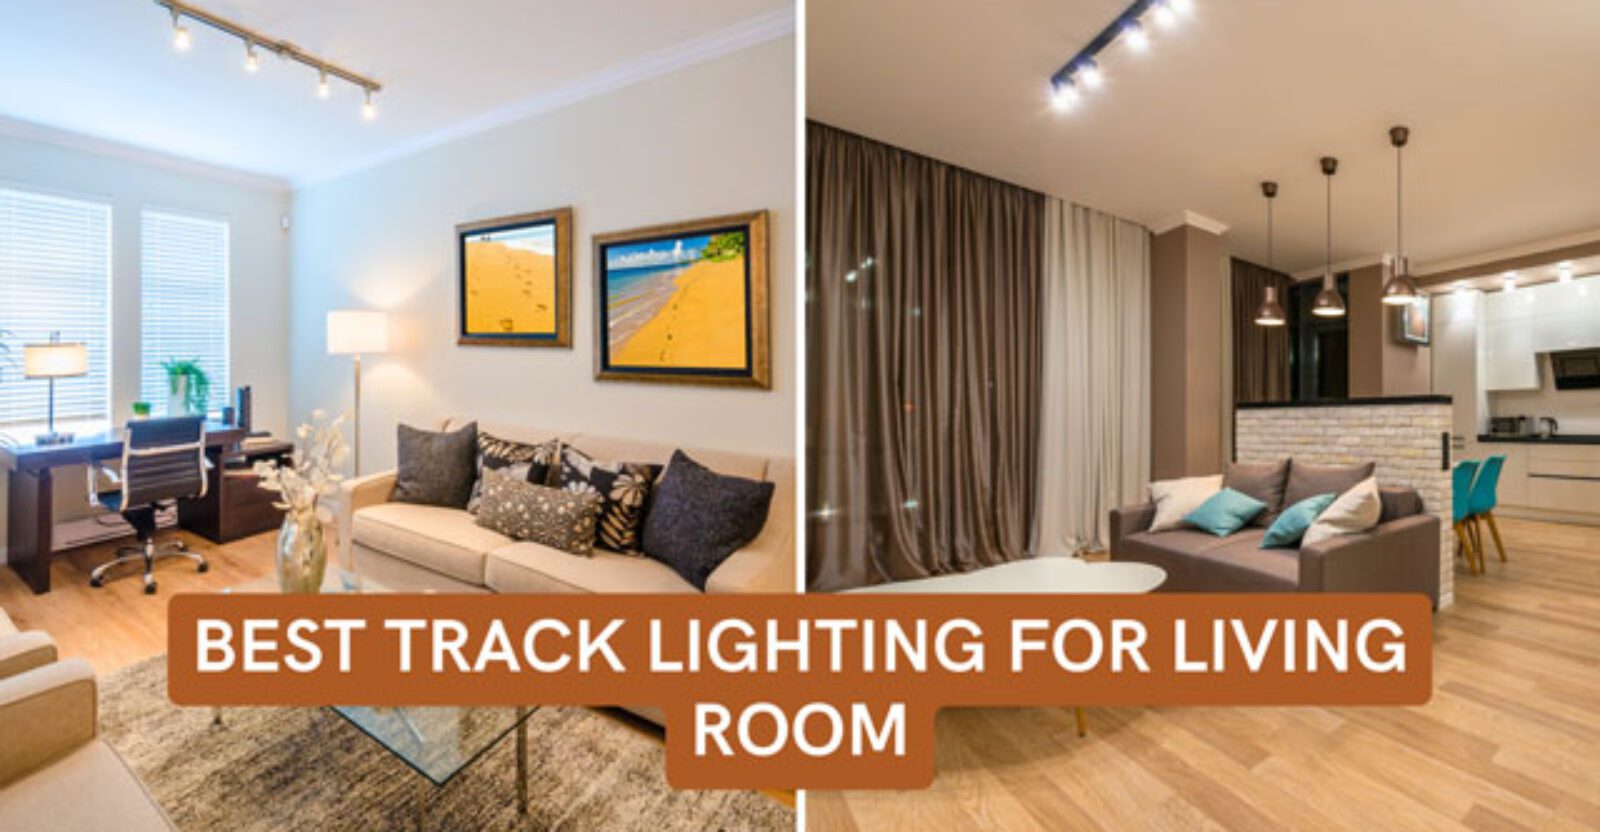 Best Track Lighting For Living Room 1600x832 